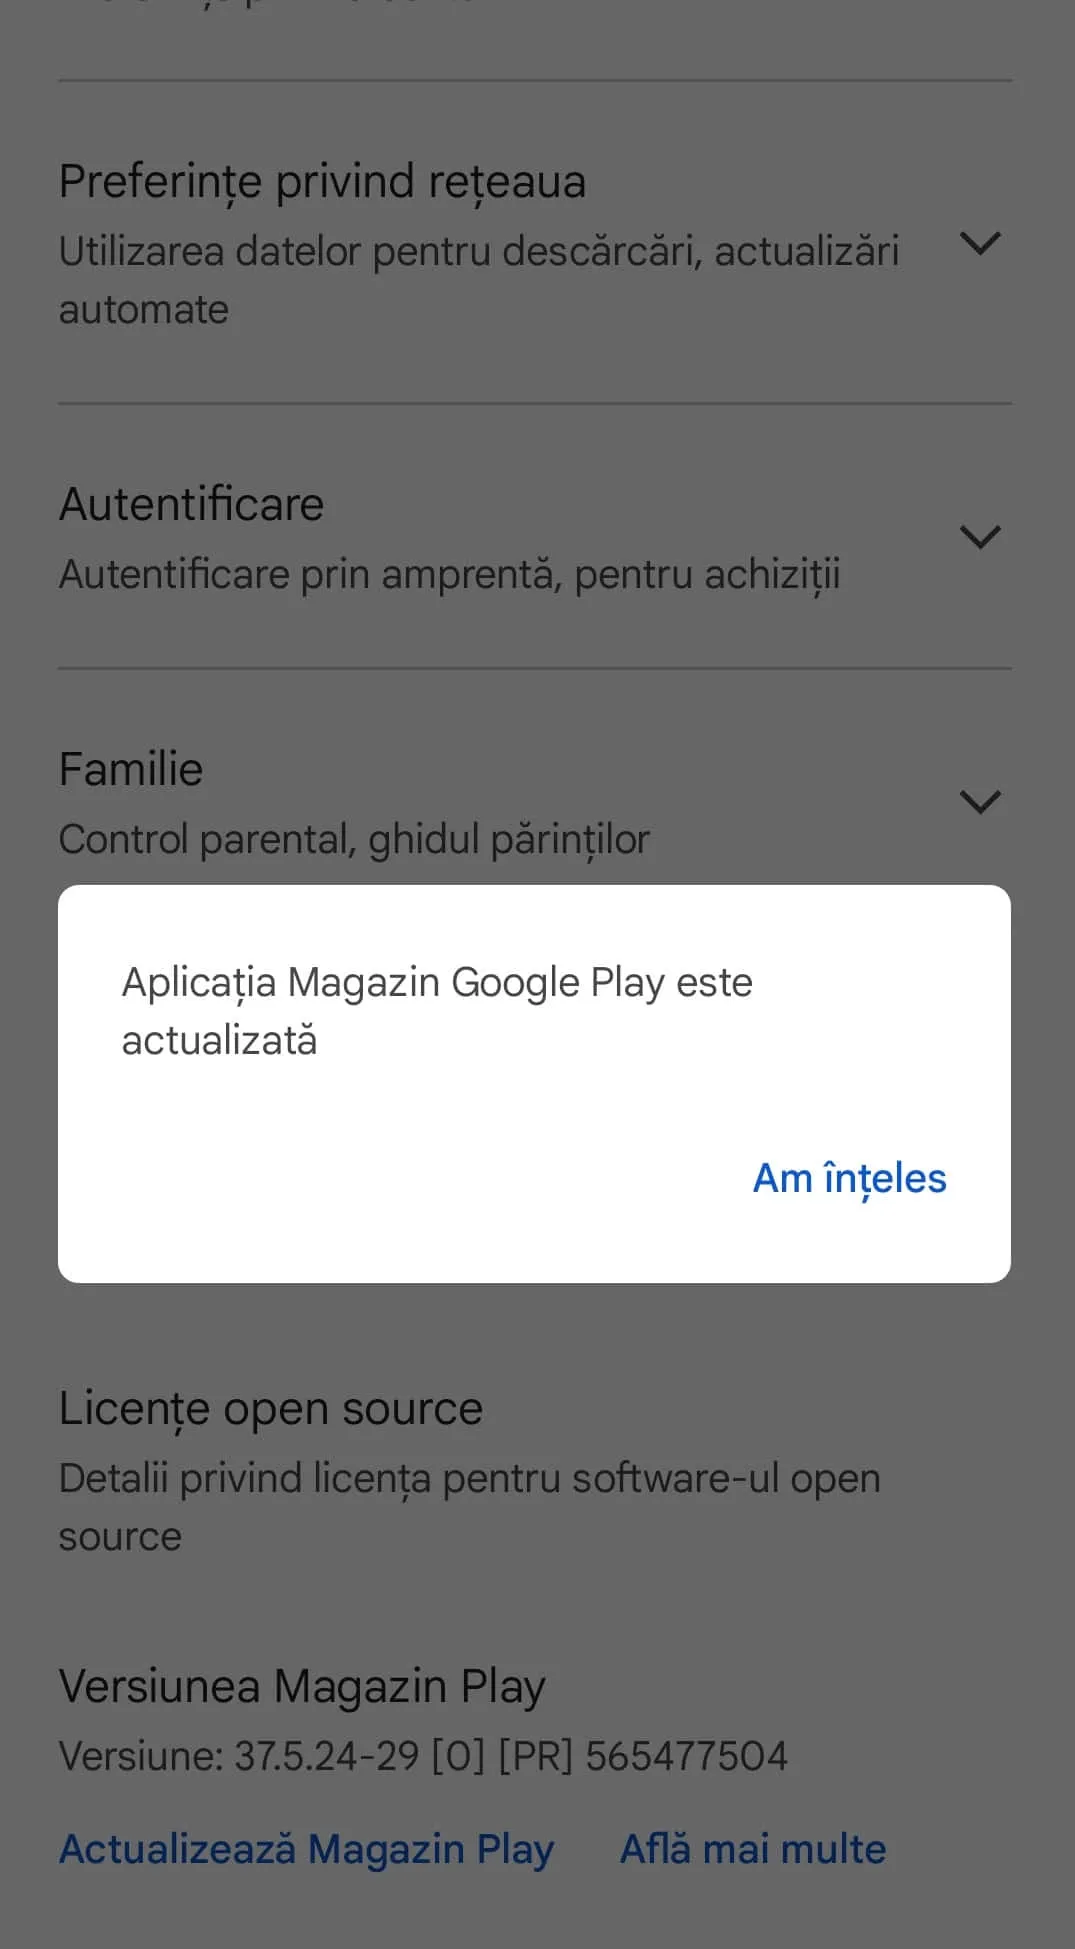 Aplicatia Magazin Google Play este este actualizata